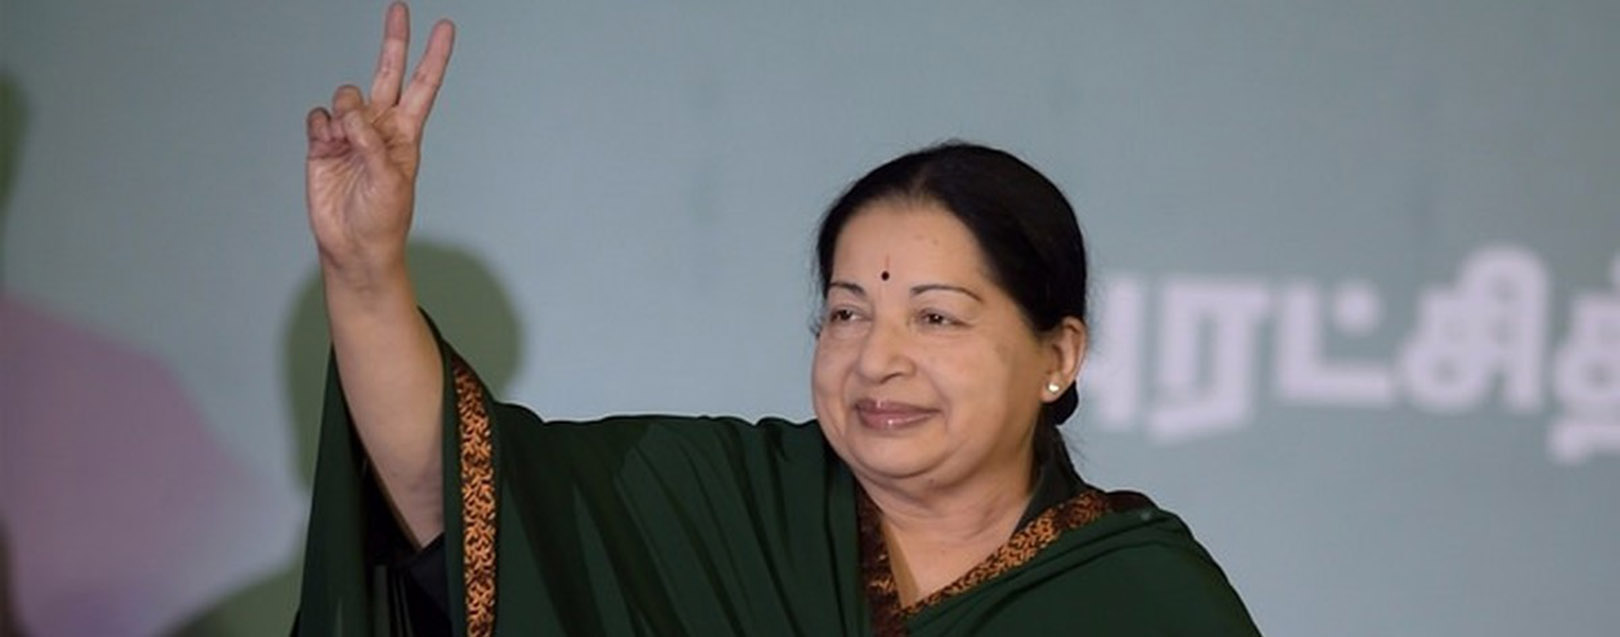 Jayalalithaa the star of Tamil Nadu fades away